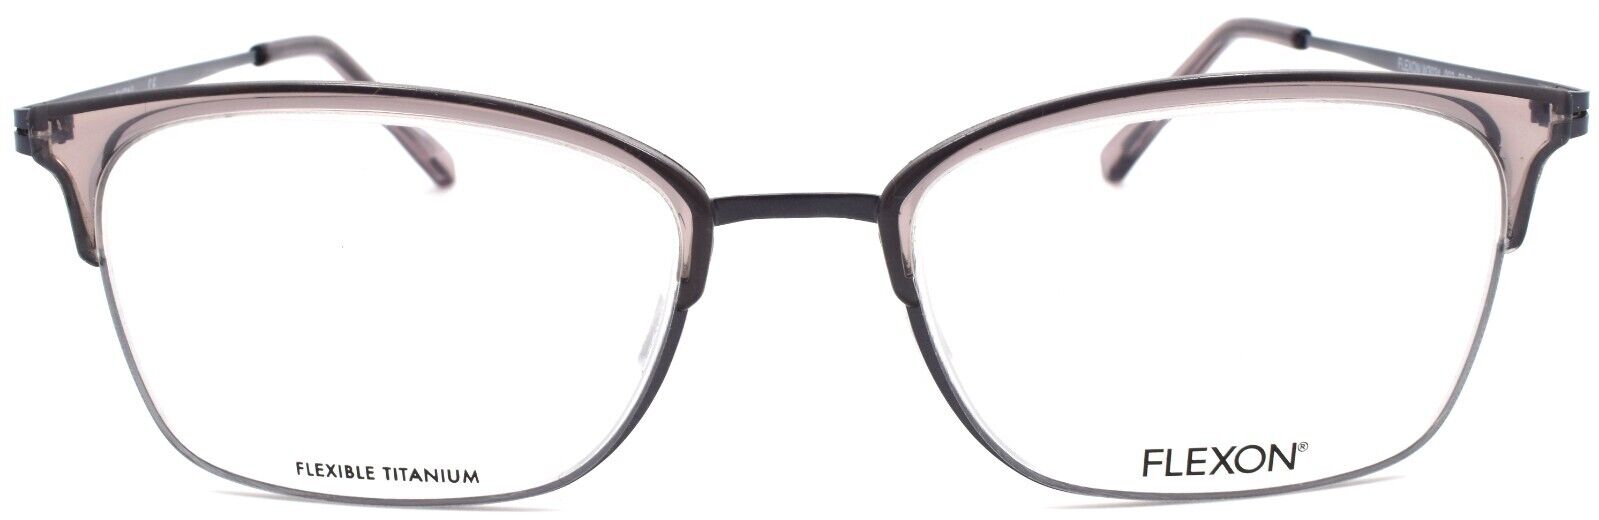 2-Flexon W3024 003 Women's Eyeglasses Frames Gray 53-19-140 Flexible Titanium-883900205658-IKSpecs